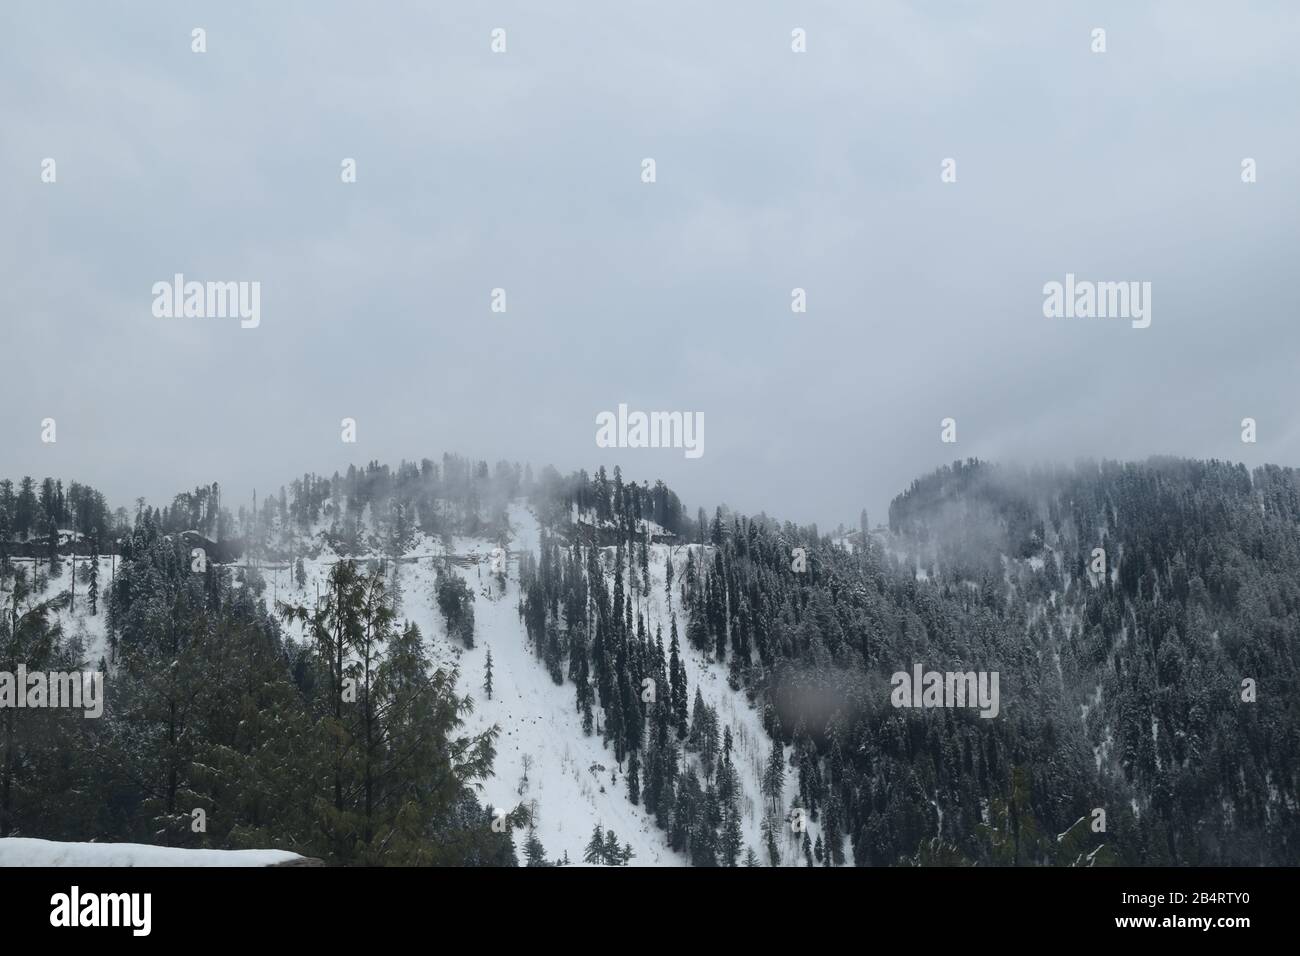 Schöner Blick auf schneebedeckte Bäume, Berge und bewölkten Himmel Stockfoto